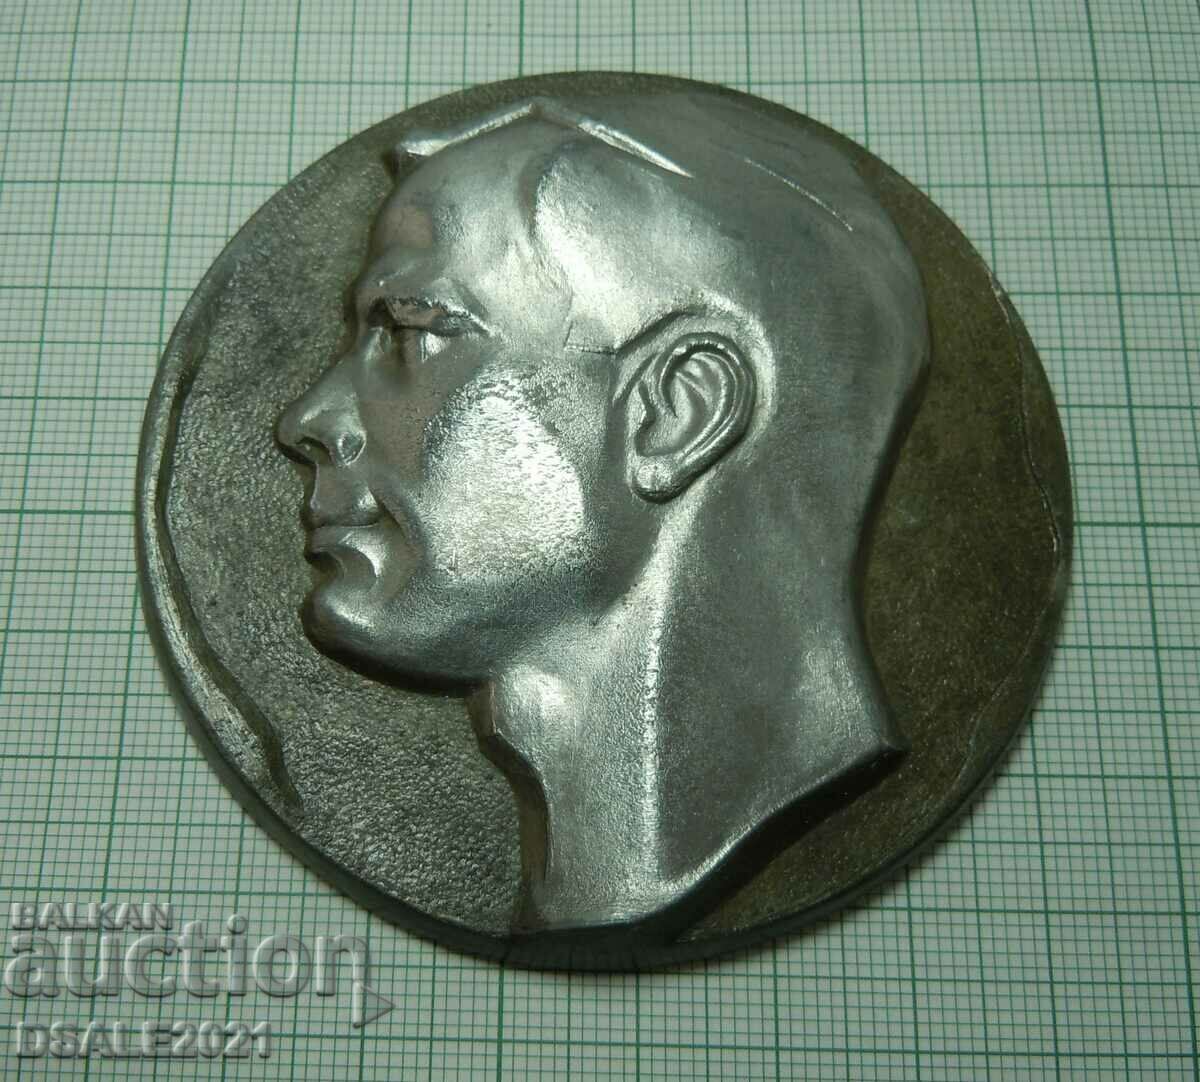 COSMOS 1961 Επιτραπέζιο μετάλλιο πινακίδας κοσμοναύτης ΕΣΣΔ Yu. Gagarin